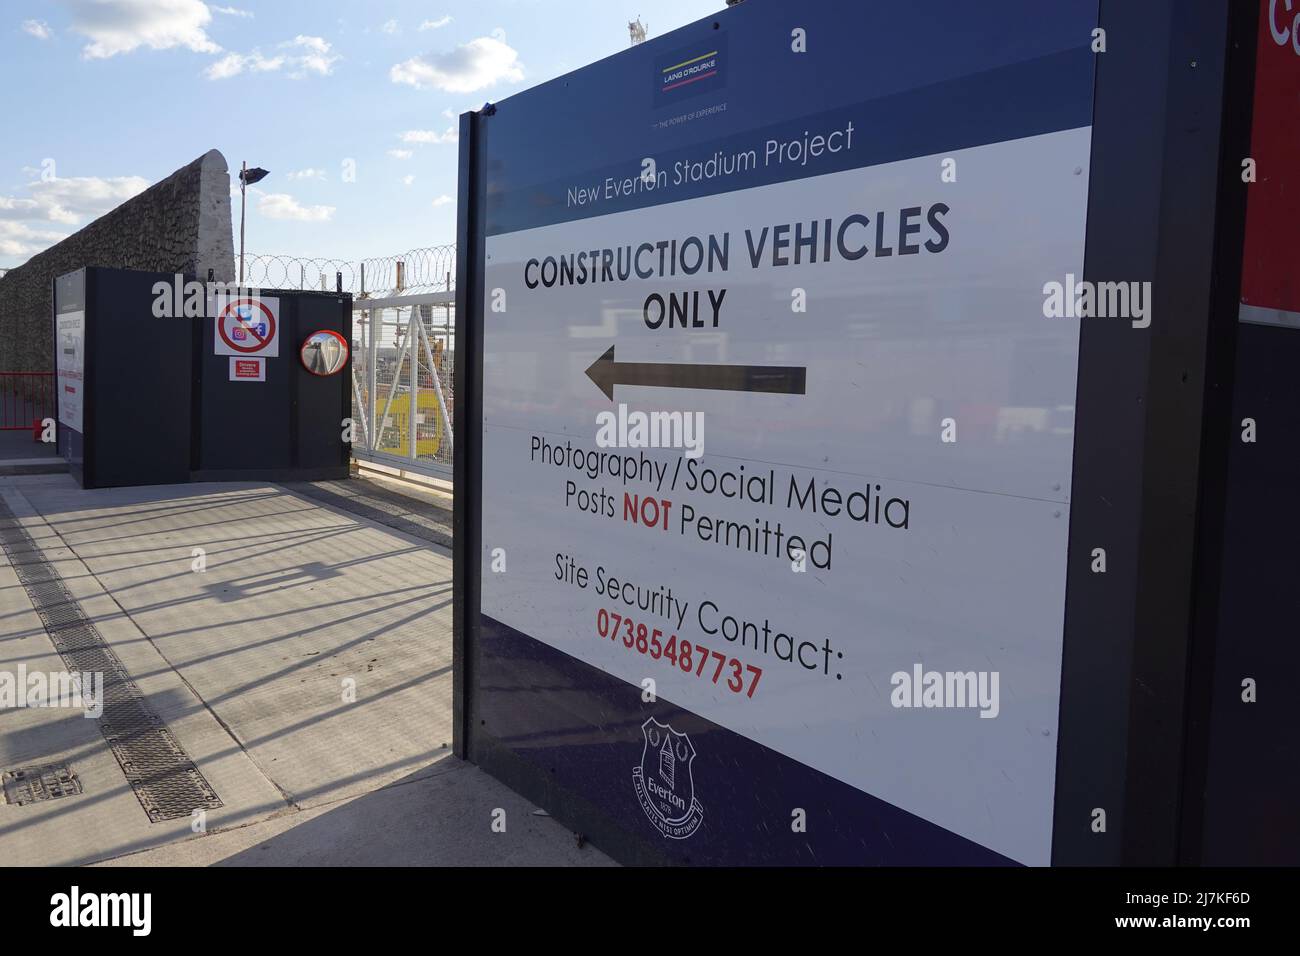 Entrée au nouveau site de construction du stade Everton FC, Liverpool Merseyside, Royaume-Uni Banque D'Images